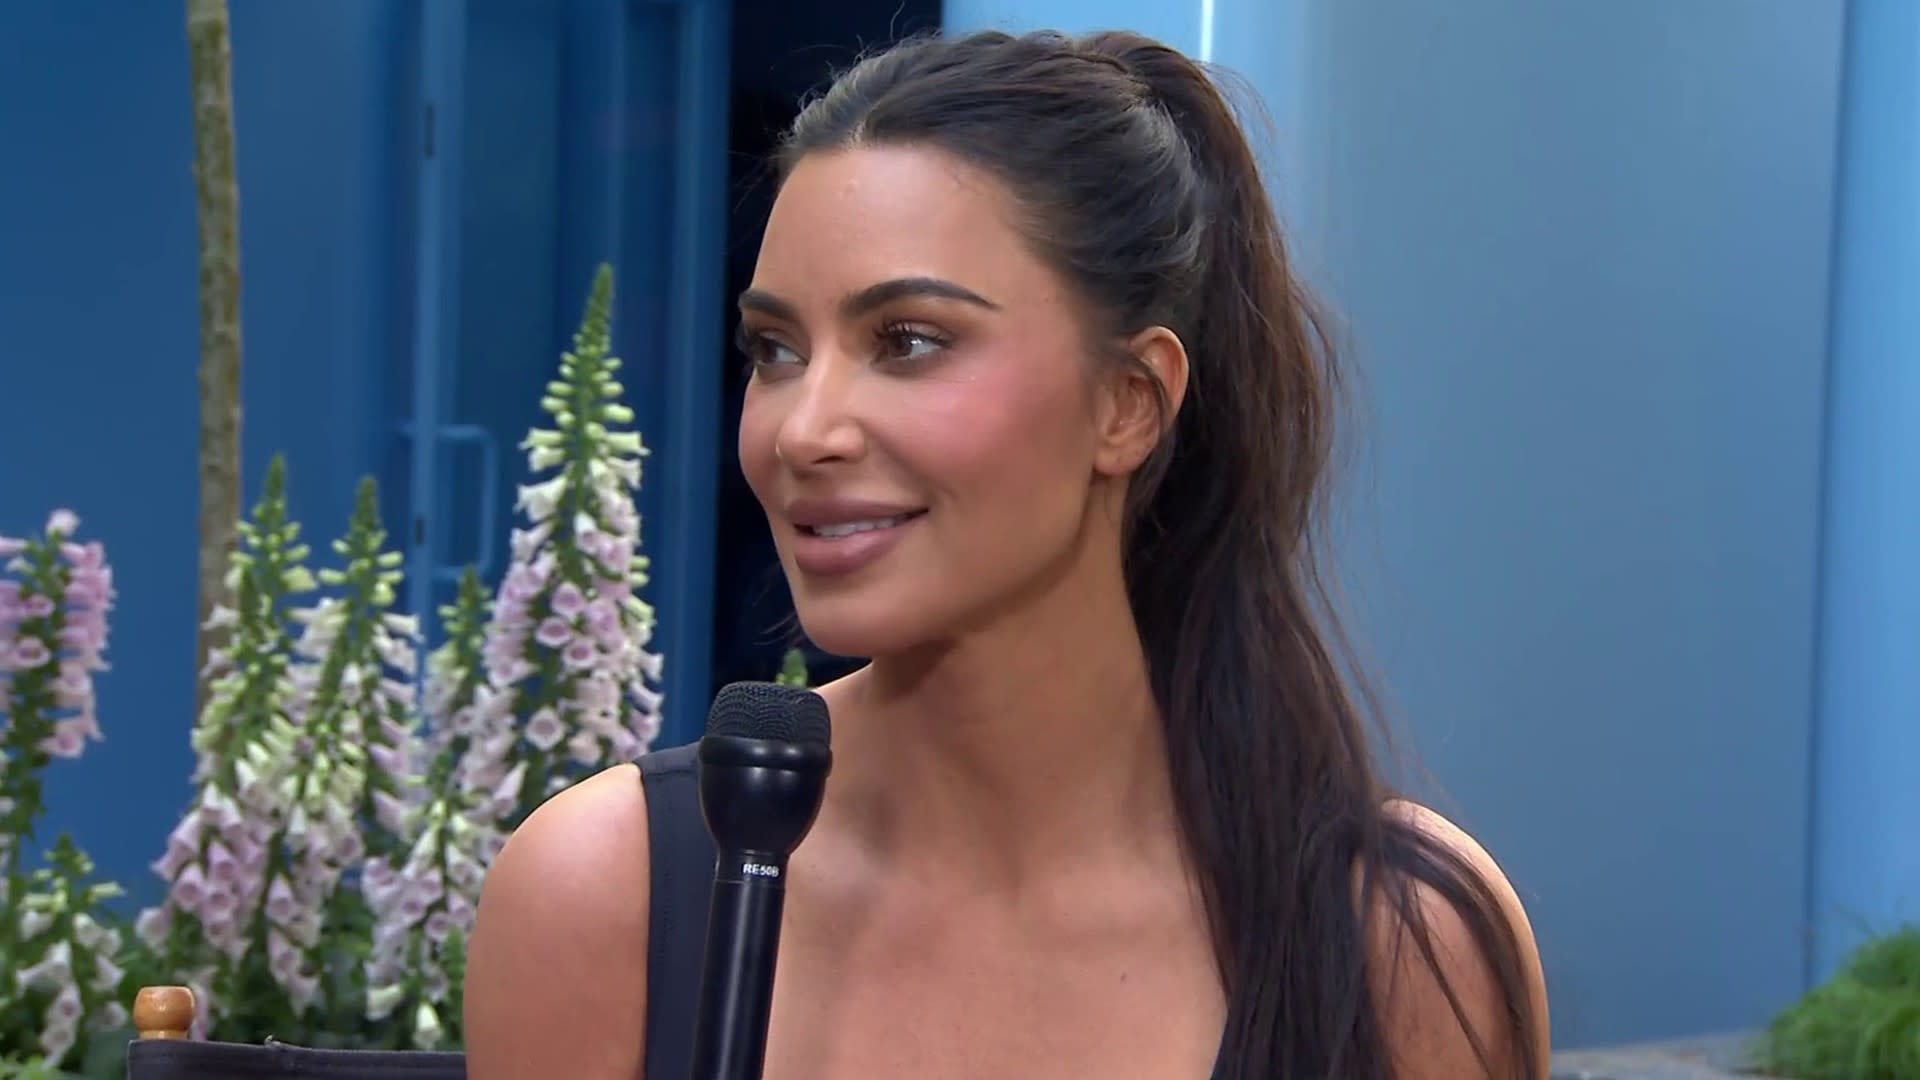 Why climate change organization is objecting to Kim Kardashian's new Skims  bra